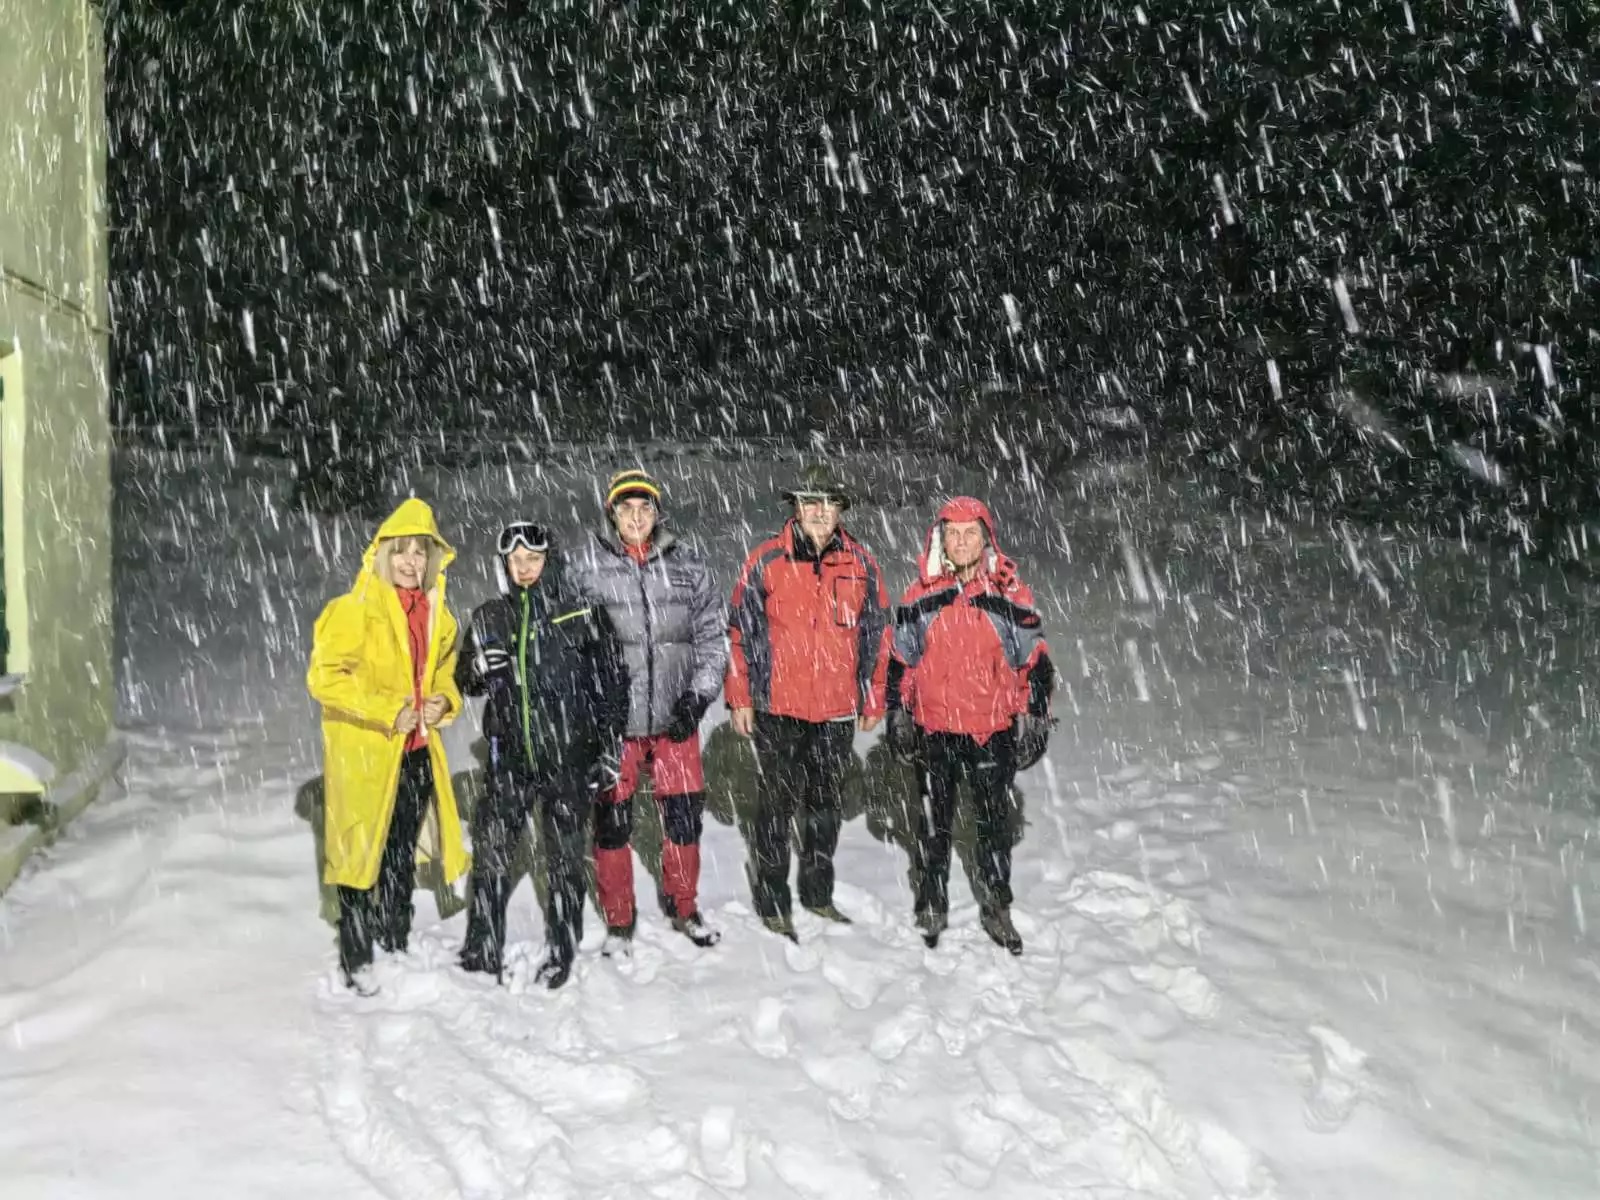 Αίσιο τέλος στην περιπέτεια των εννέα ατόμων που παγιδεύτηκαν στο χιόνι στον Κίσσαβο